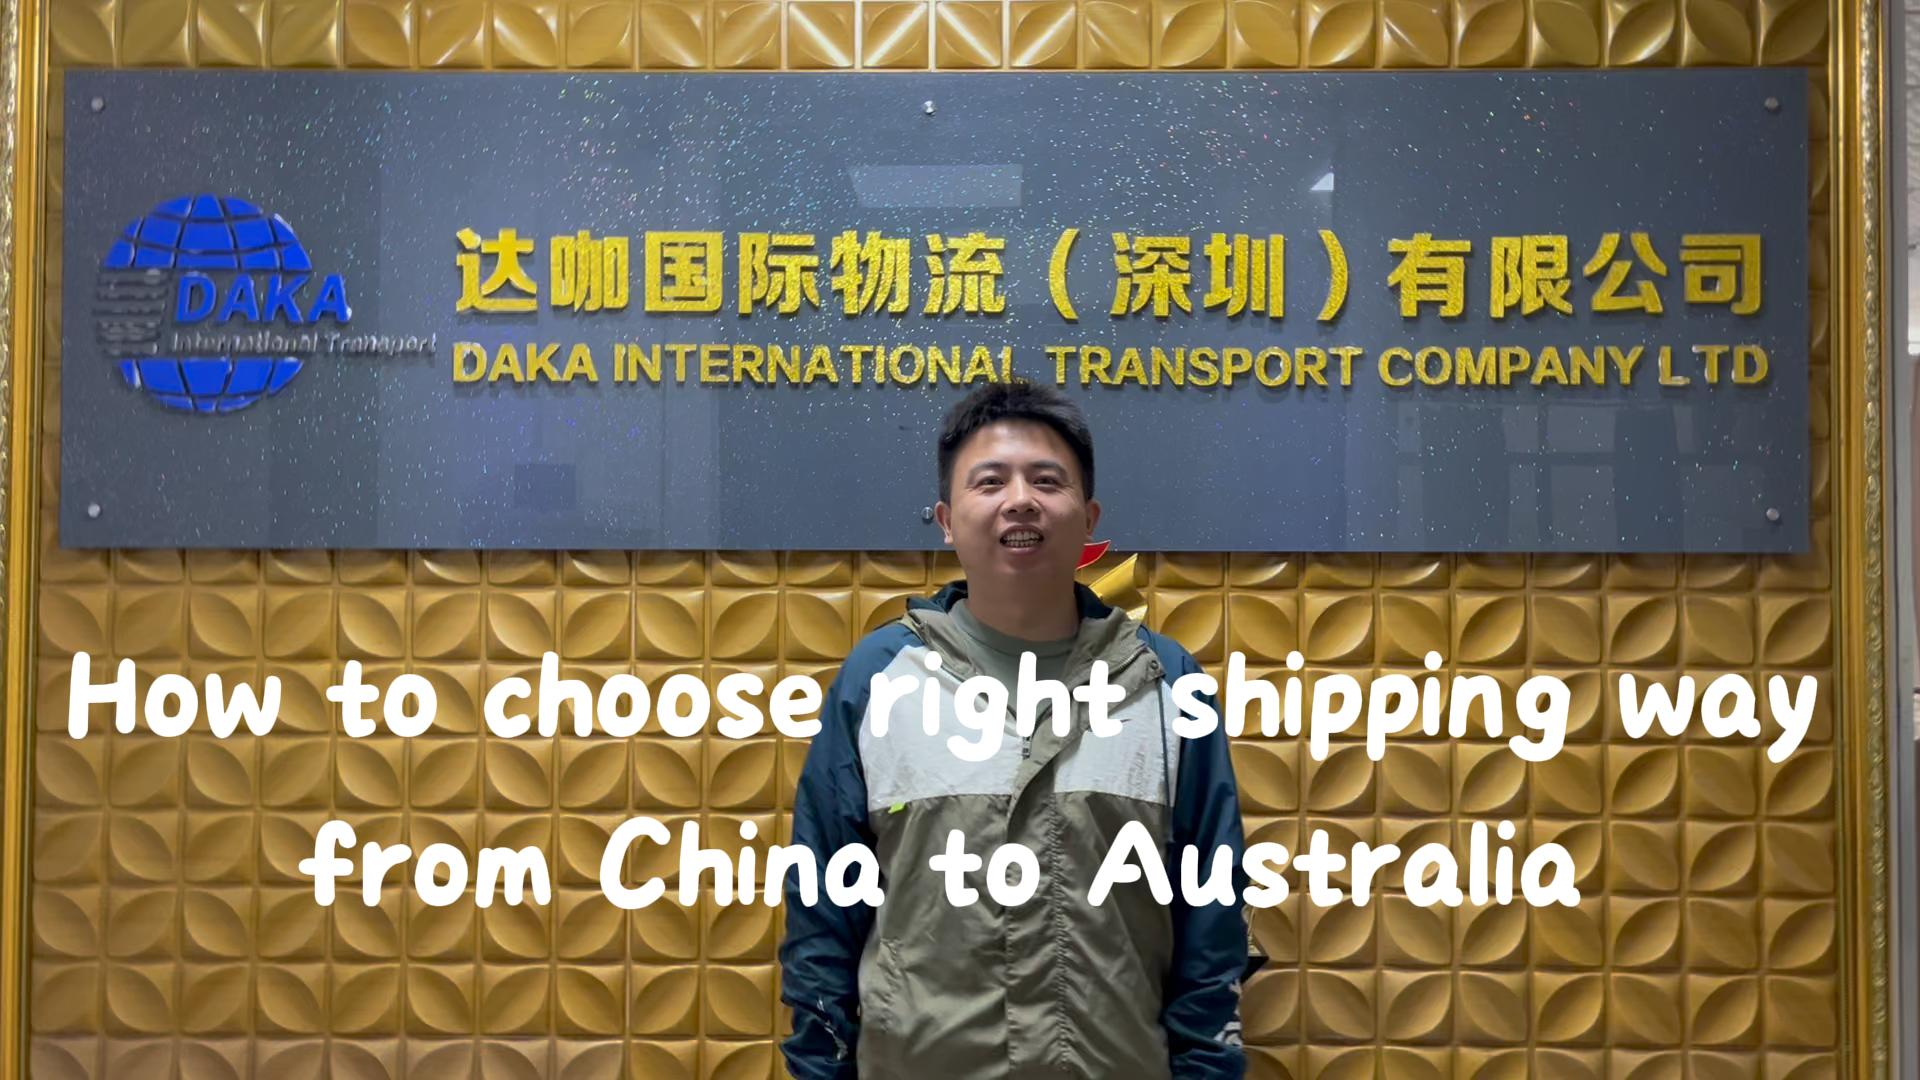 Ụzọ mbupu si China gaa Australia